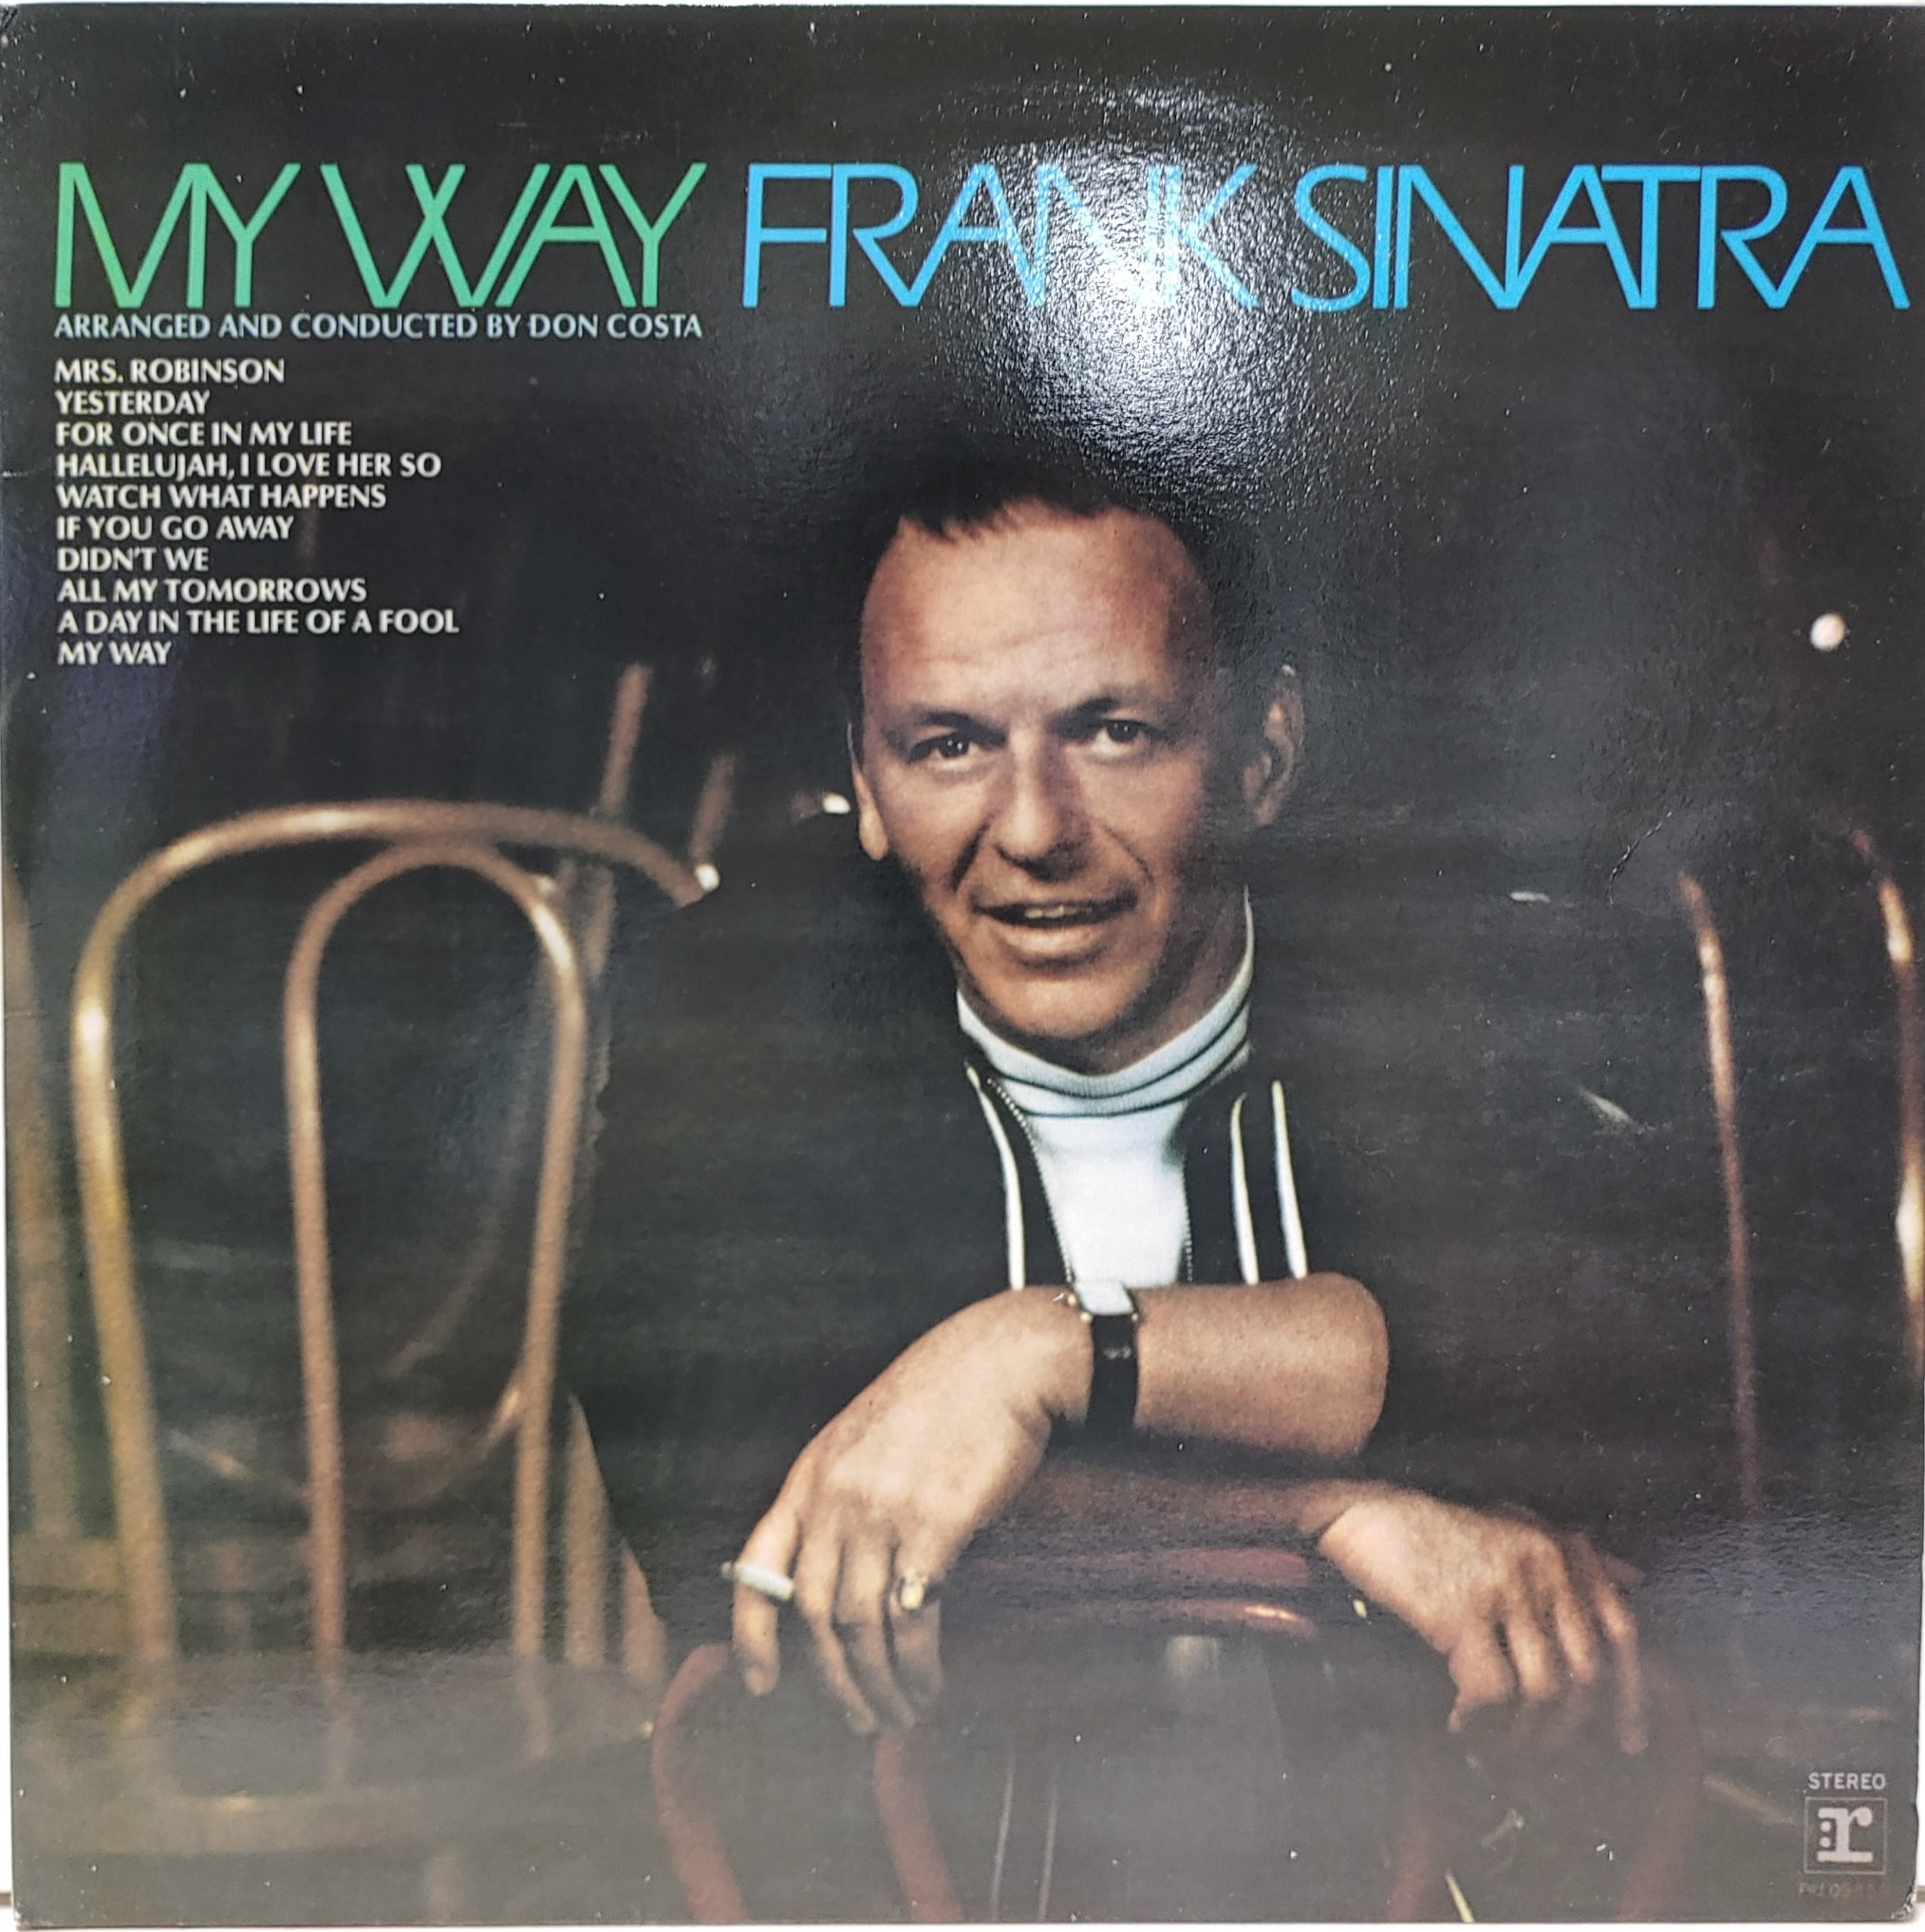 FRANK SINATRA / MY WAY